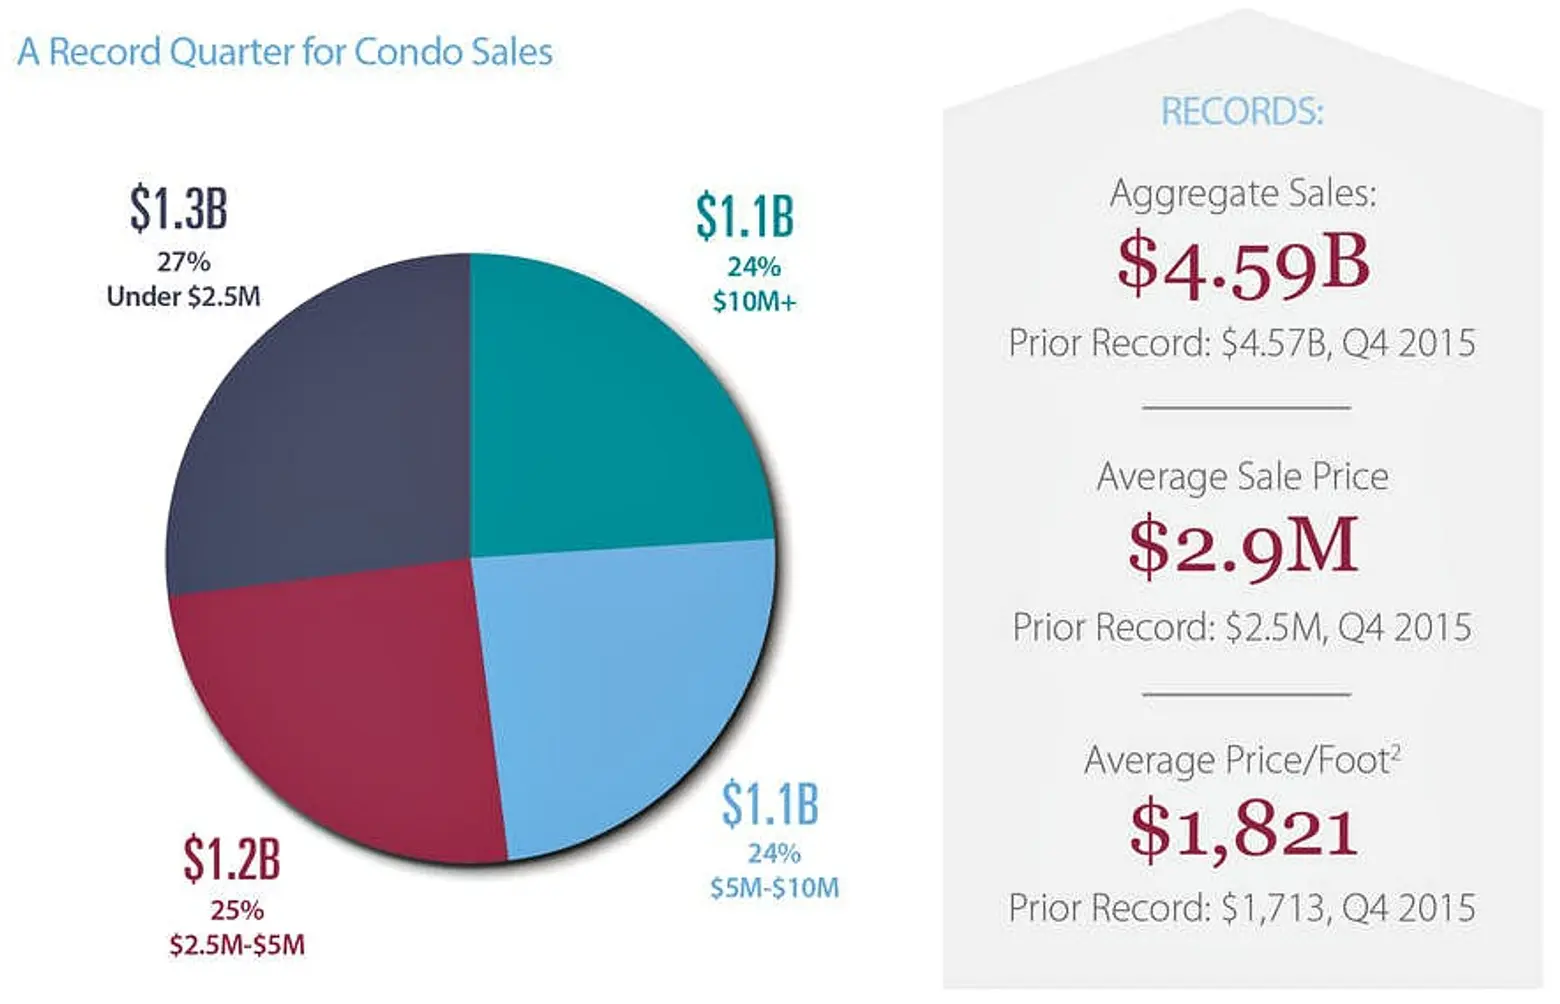 Average Condo Sale in Manhattan Reaches $2.9M, Setting New Record